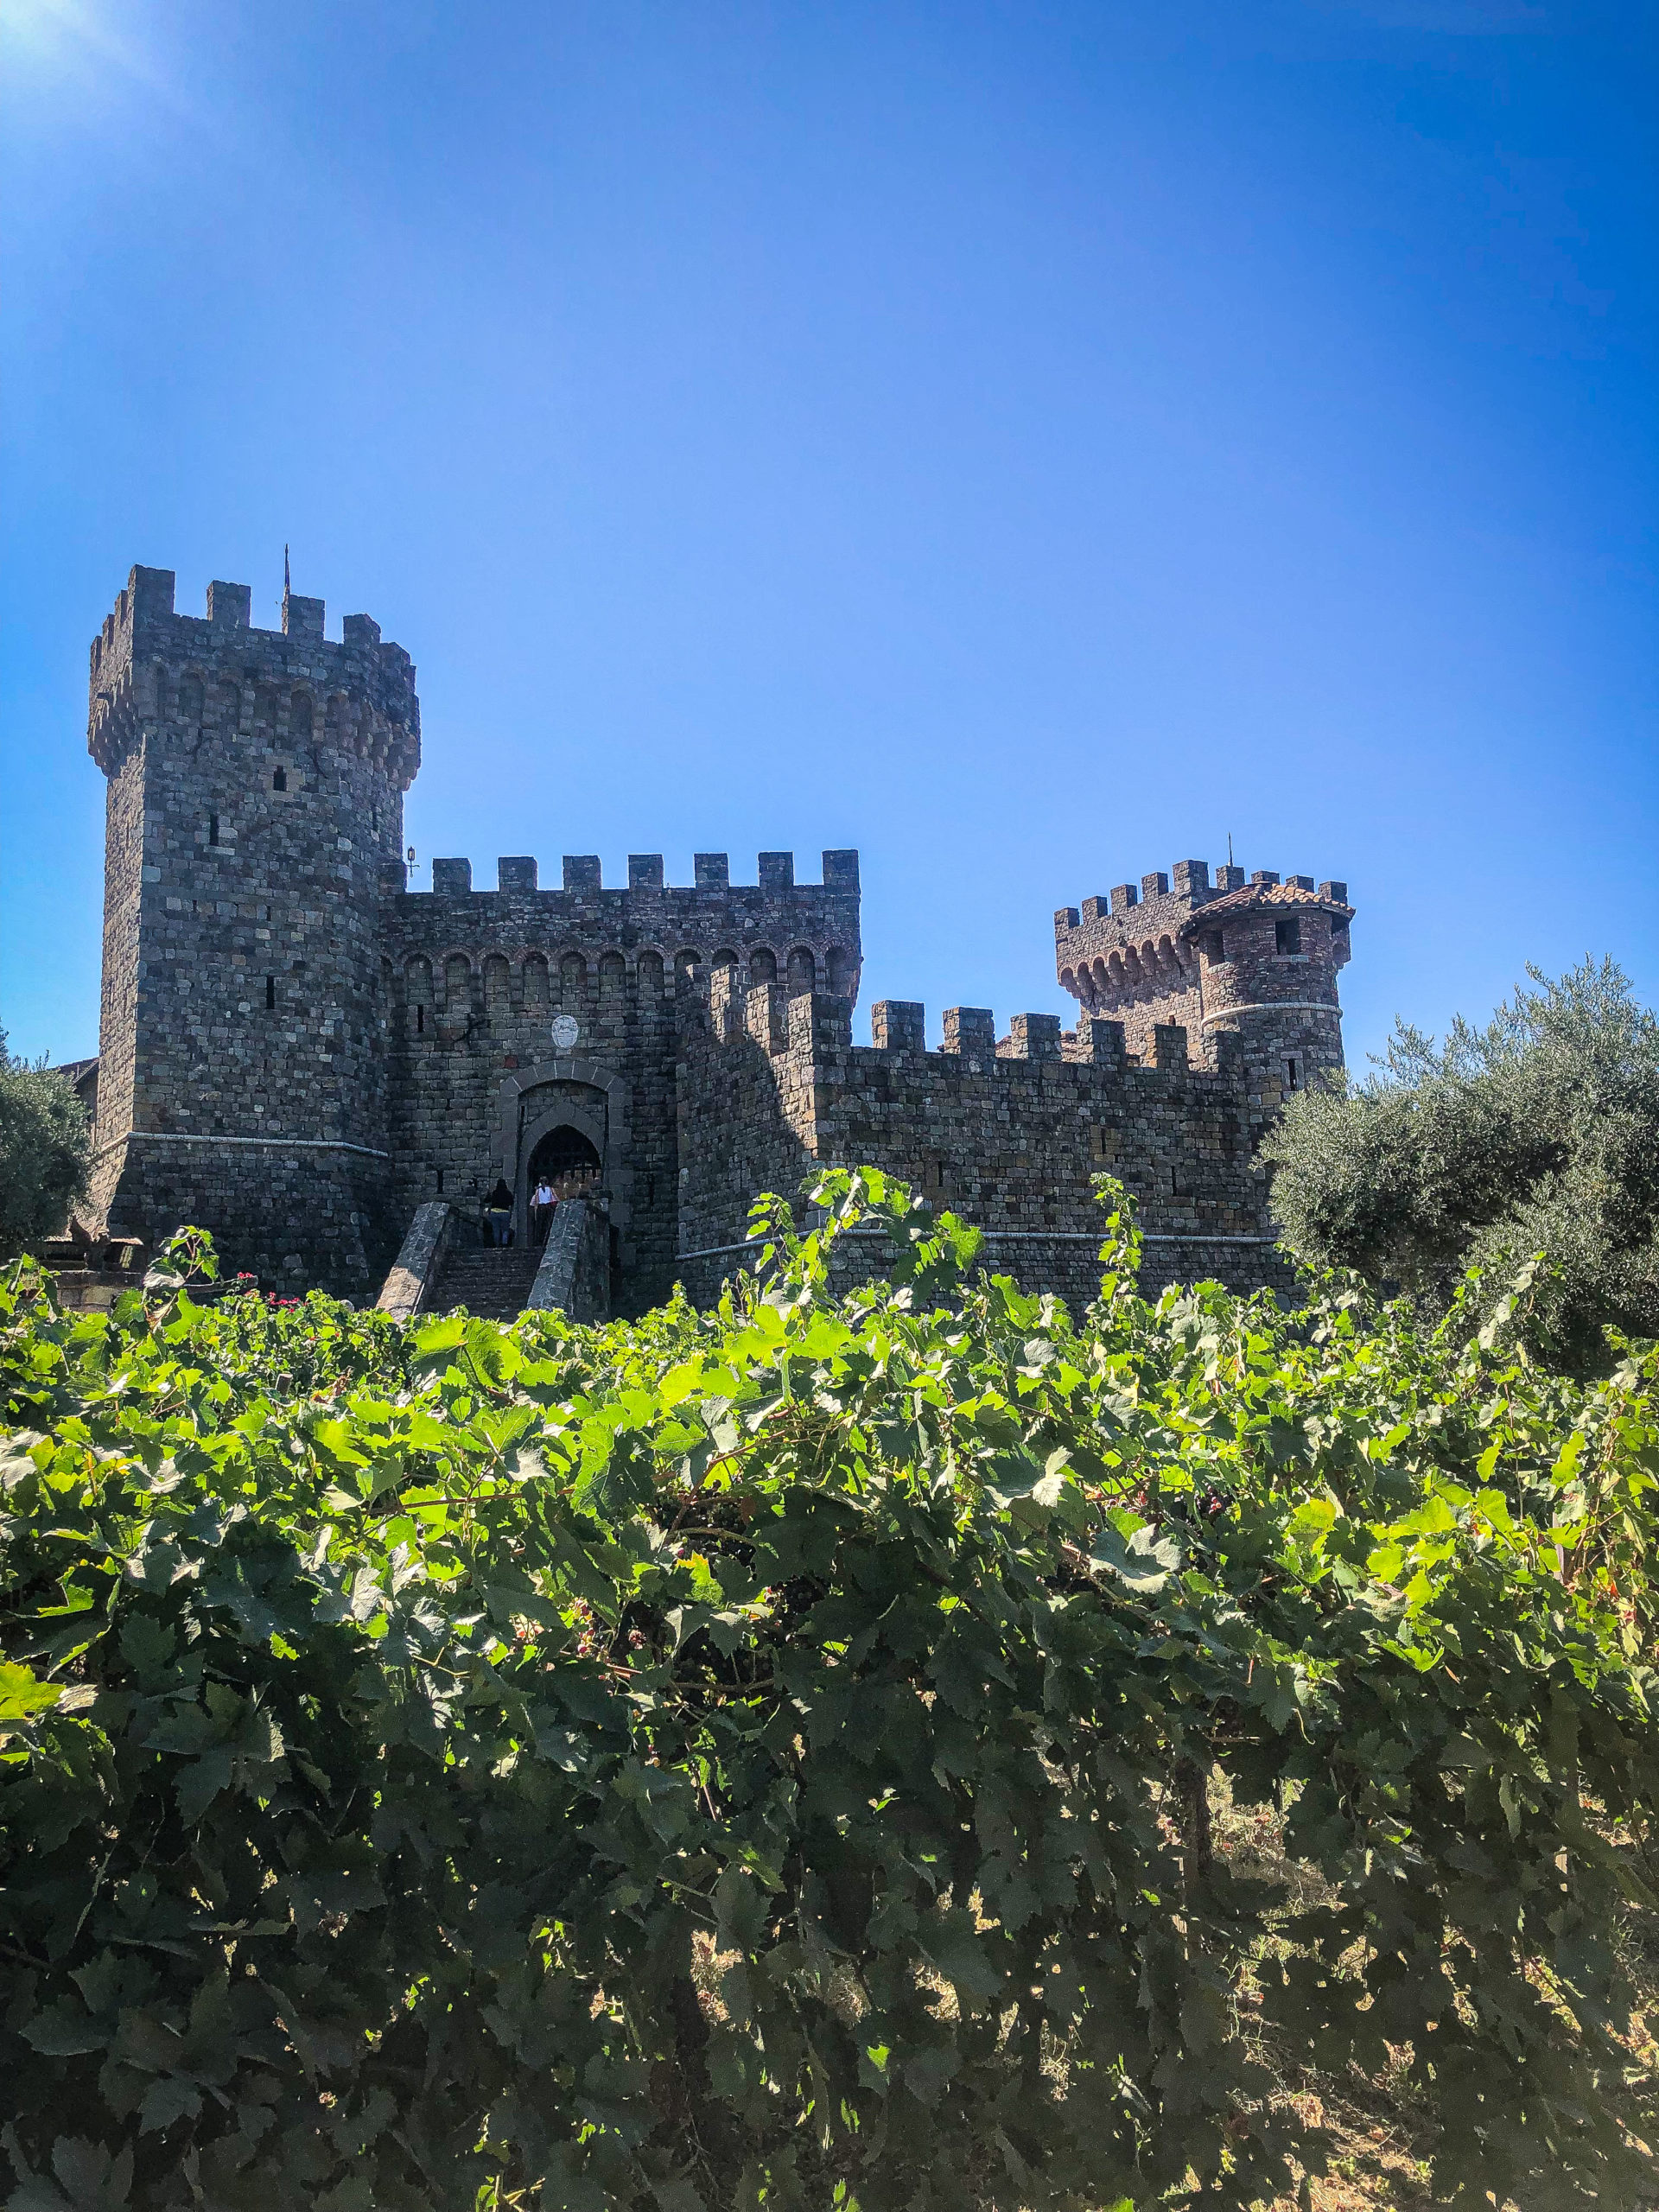 Castello di Amorosa in Napa Valley